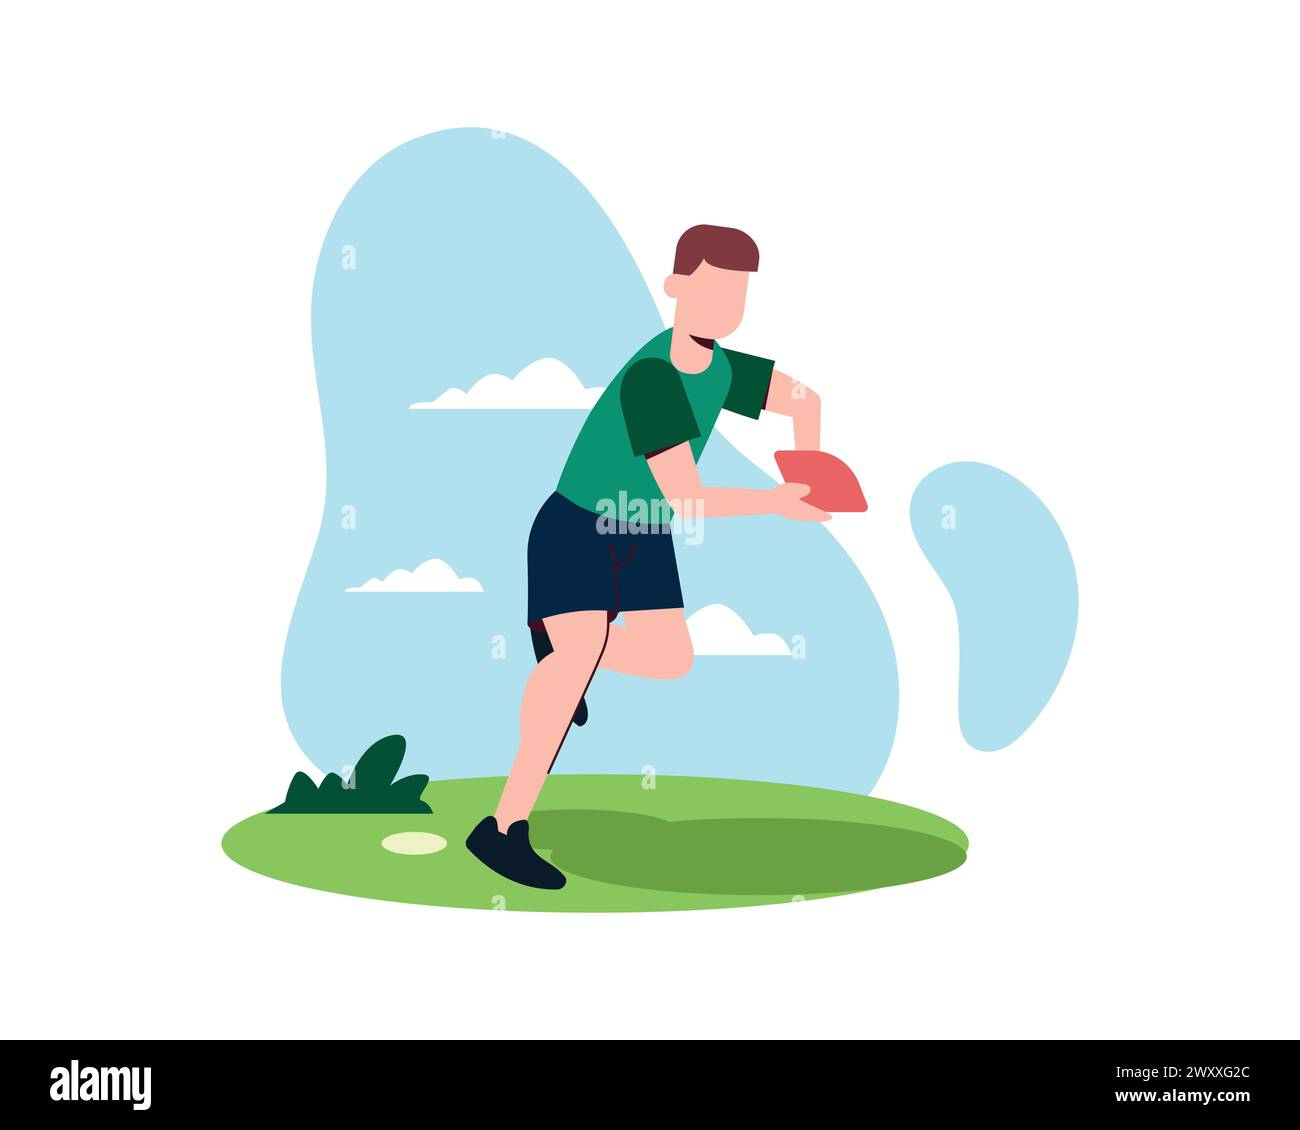 Ein Mann, der draußen Rugby spielt, Ball hält und auf dem Feld läuft. Vektor-Illustration für Sport, junger Rugbyspieler, American Football Konzept Stock Vektor